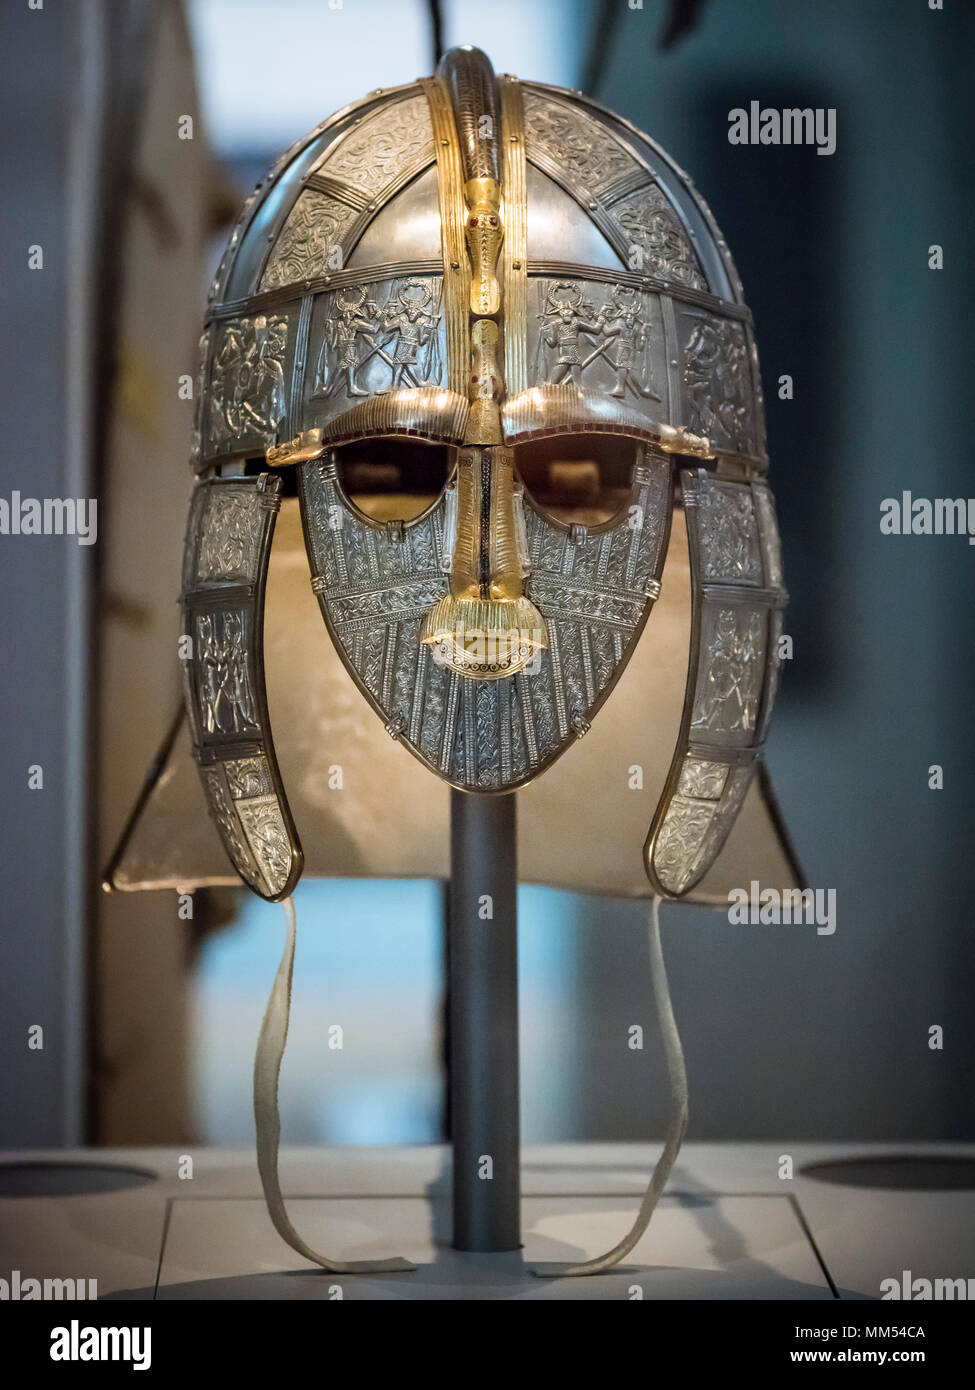 Londres. L'Angleterre. British Museum. Une réplique de la casque de Sutton Hoo faites par le Royal Armouries. Le navire de Sutton Hoo enterrement à Suffolk, Angleterre, exca Banque D'Images